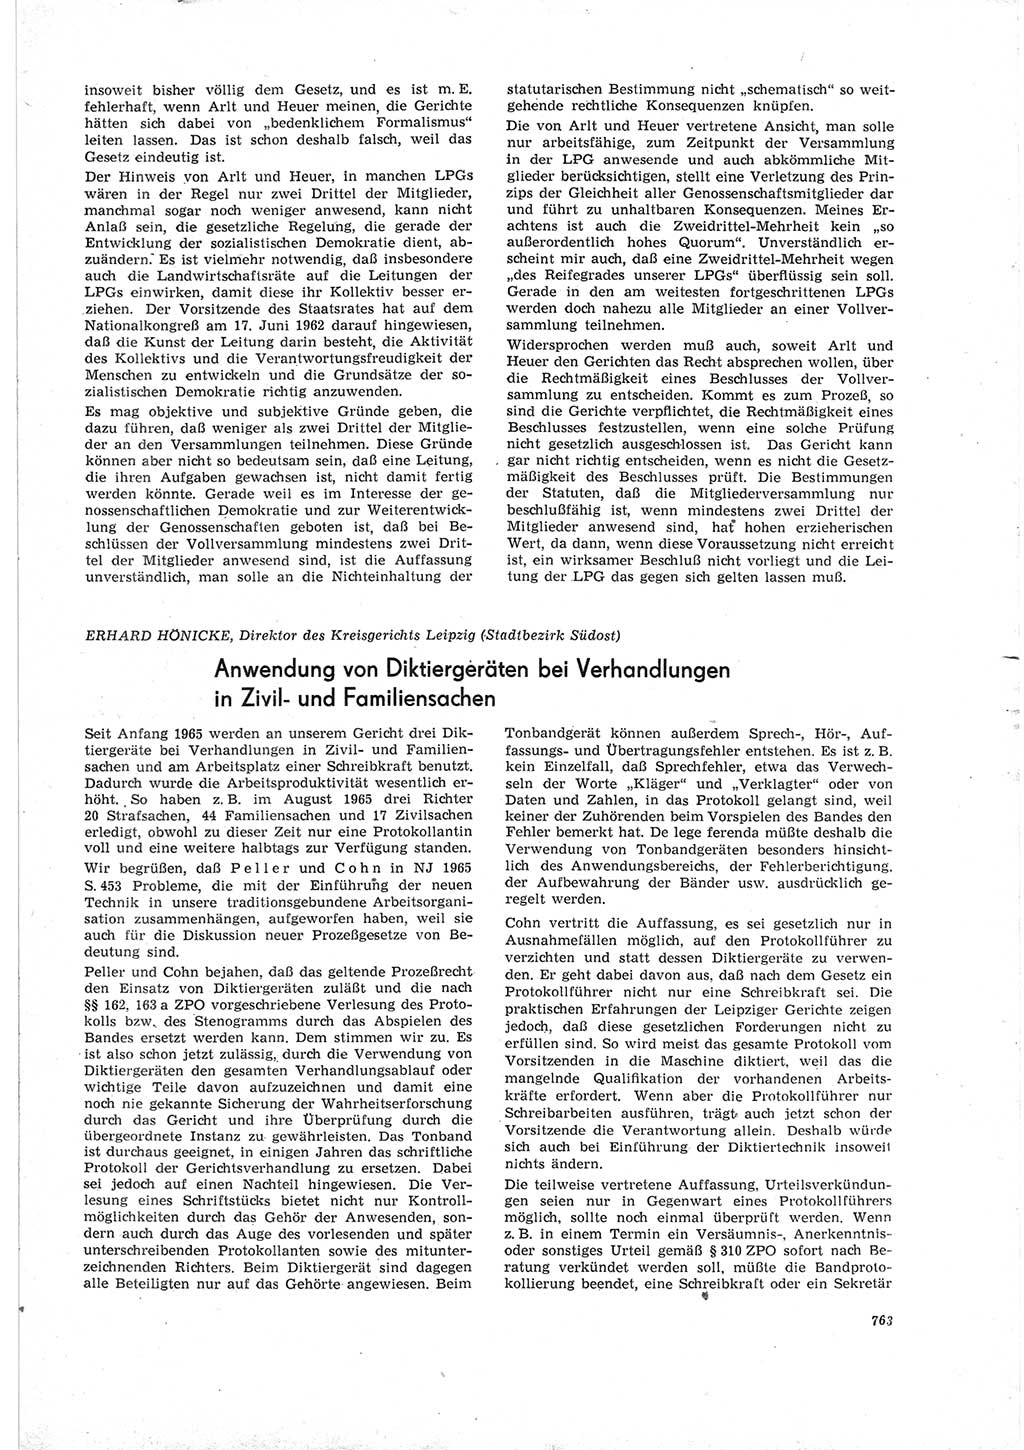 Neue Justiz (NJ), Zeitschrift für Recht und Rechtswissenschaft [Deutsche Demokratische Republik (DDR)], 19. Jahrgang 1965, Seite 763 (NJ DDR 1965, S. 763)